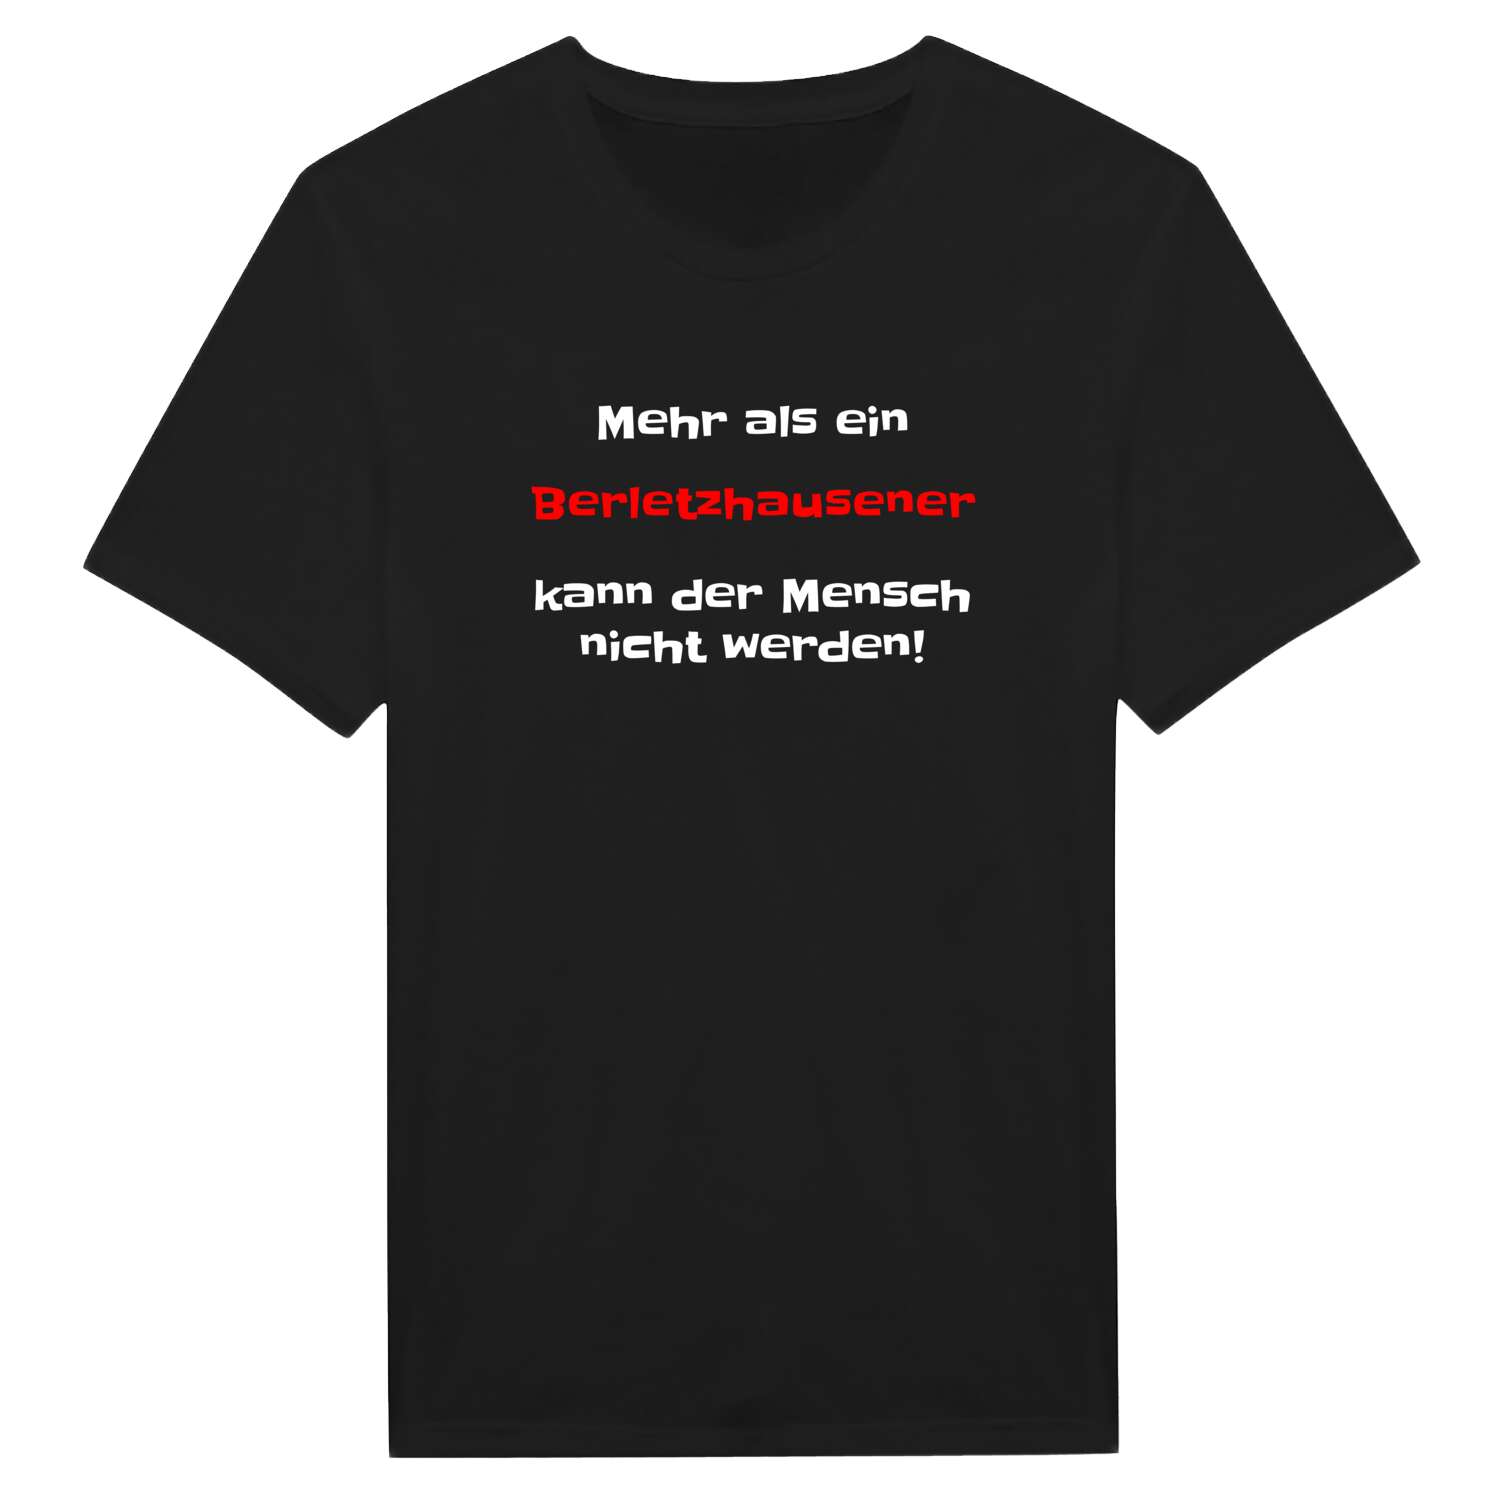 Berletzhausen T-Shirt »Mehr als ein«